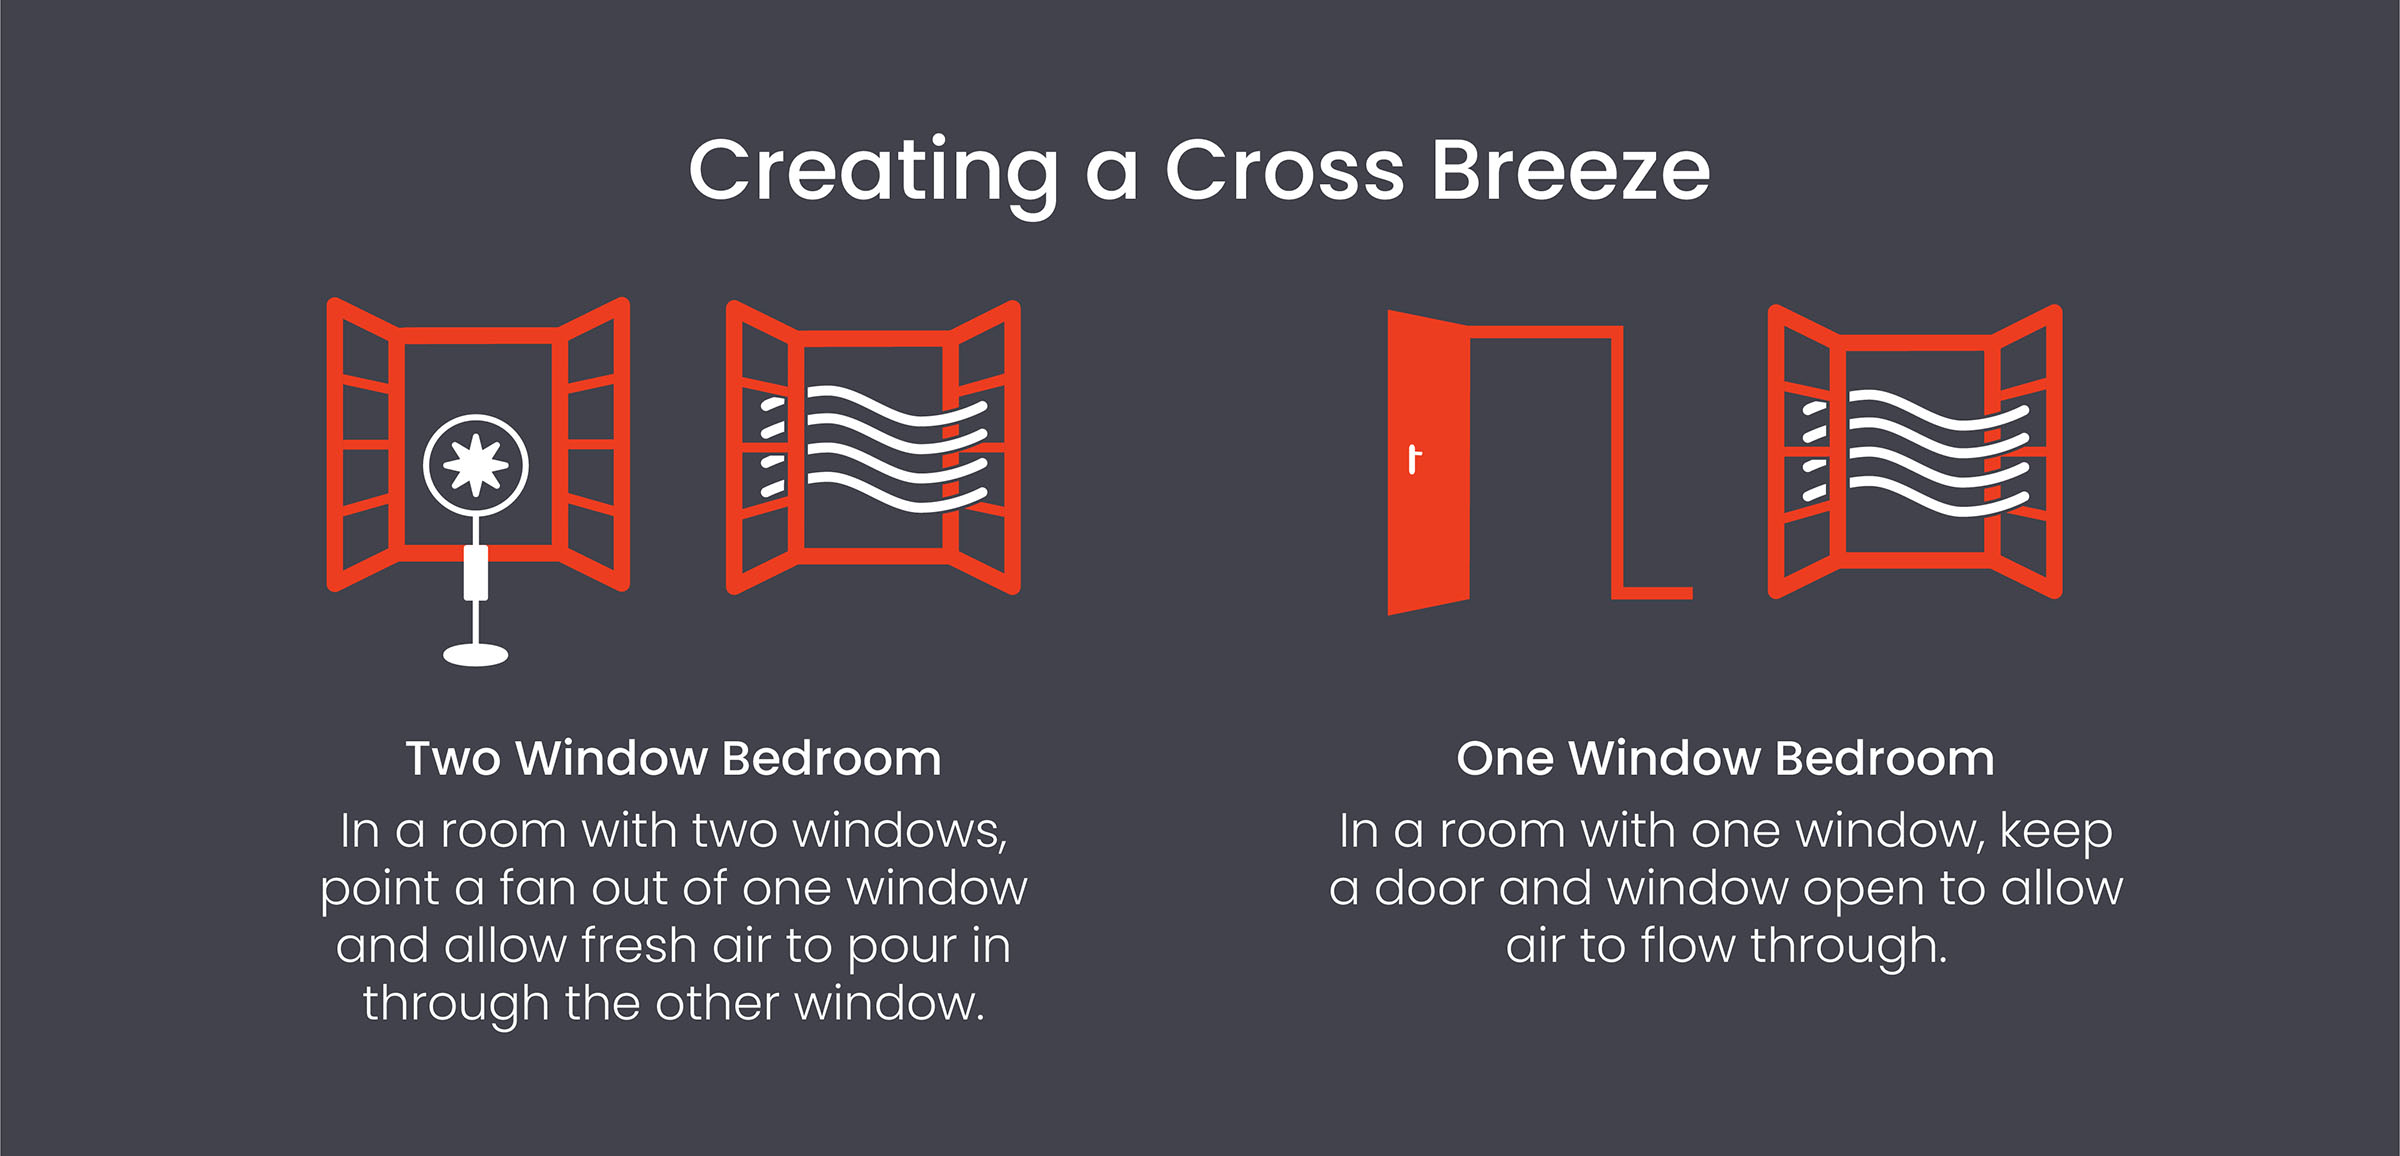 Create a cross breeze